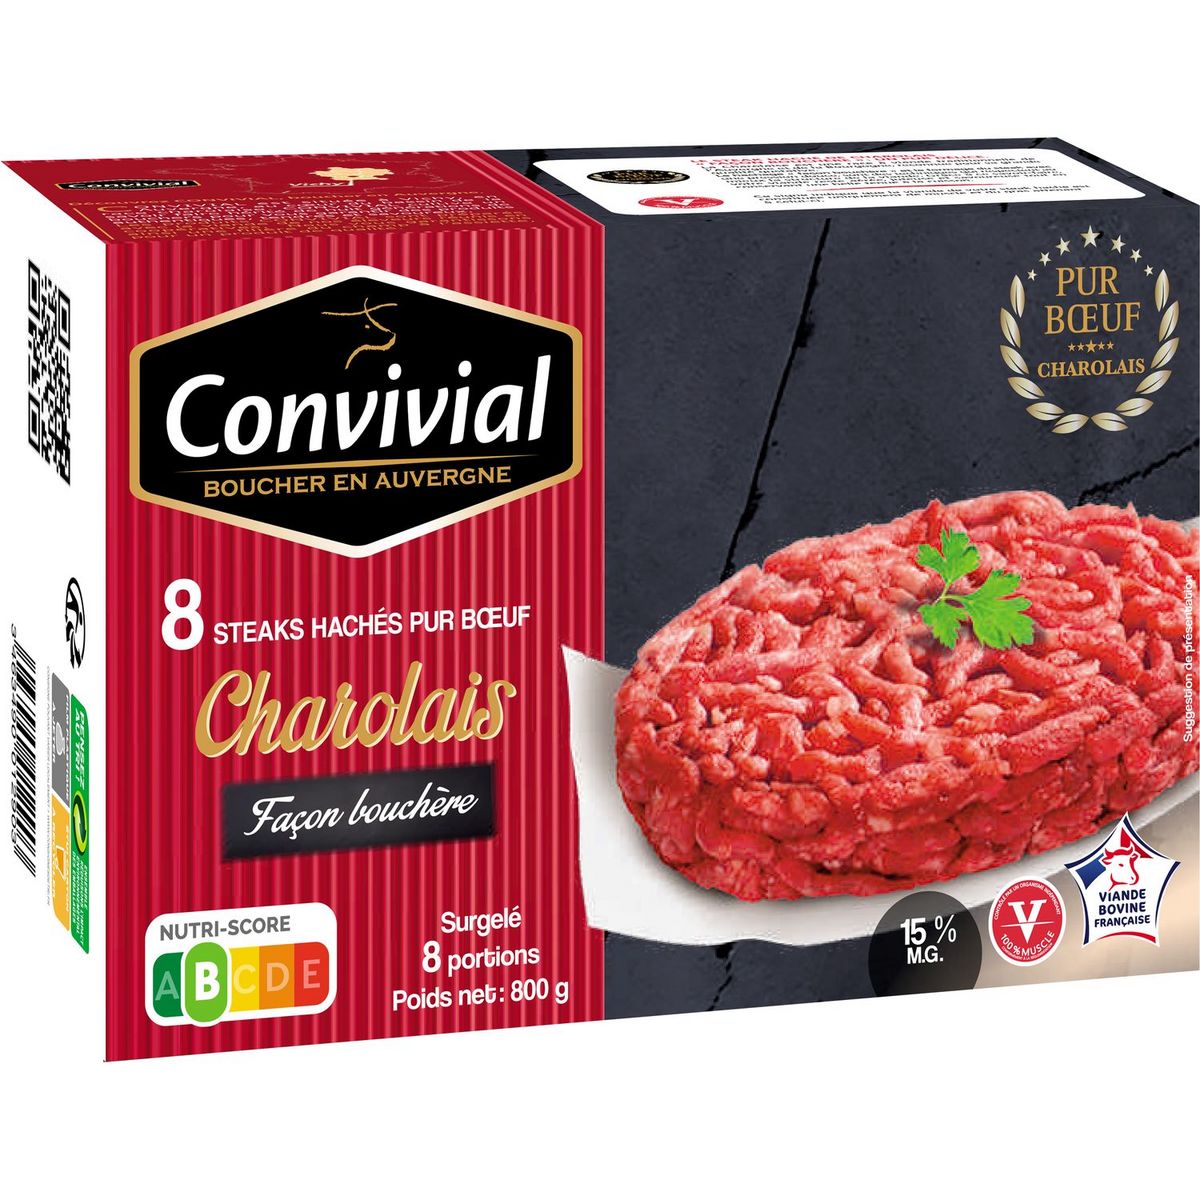 CONVIVIAL Steak haché Charolais 15%MG façon bouchère 8 steaks 800G